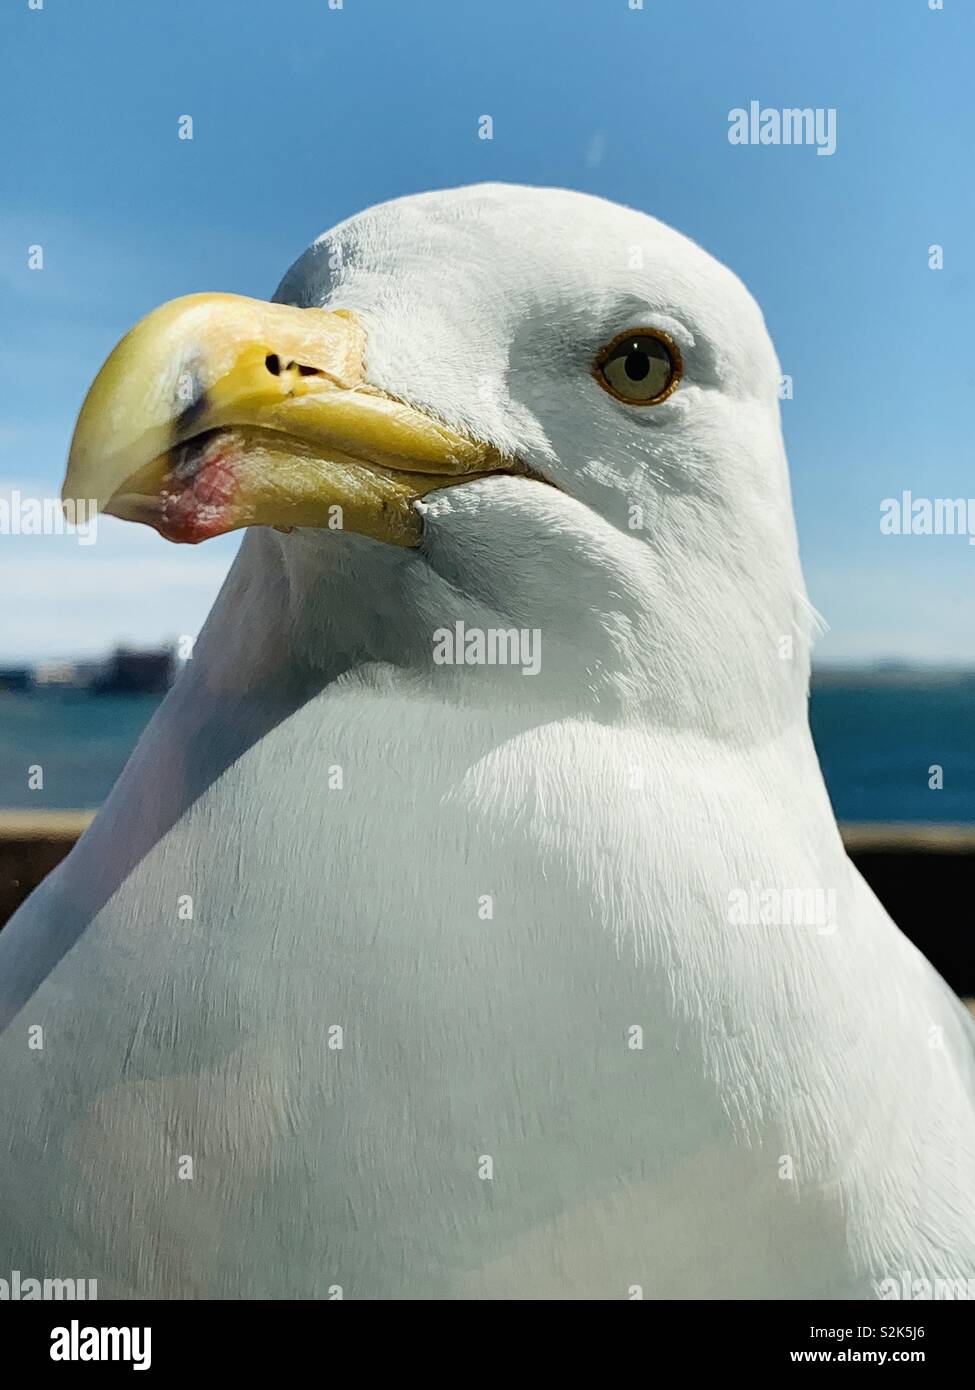 Closeup of a seagull. Boston, Massachusetts USA. Stock Photo